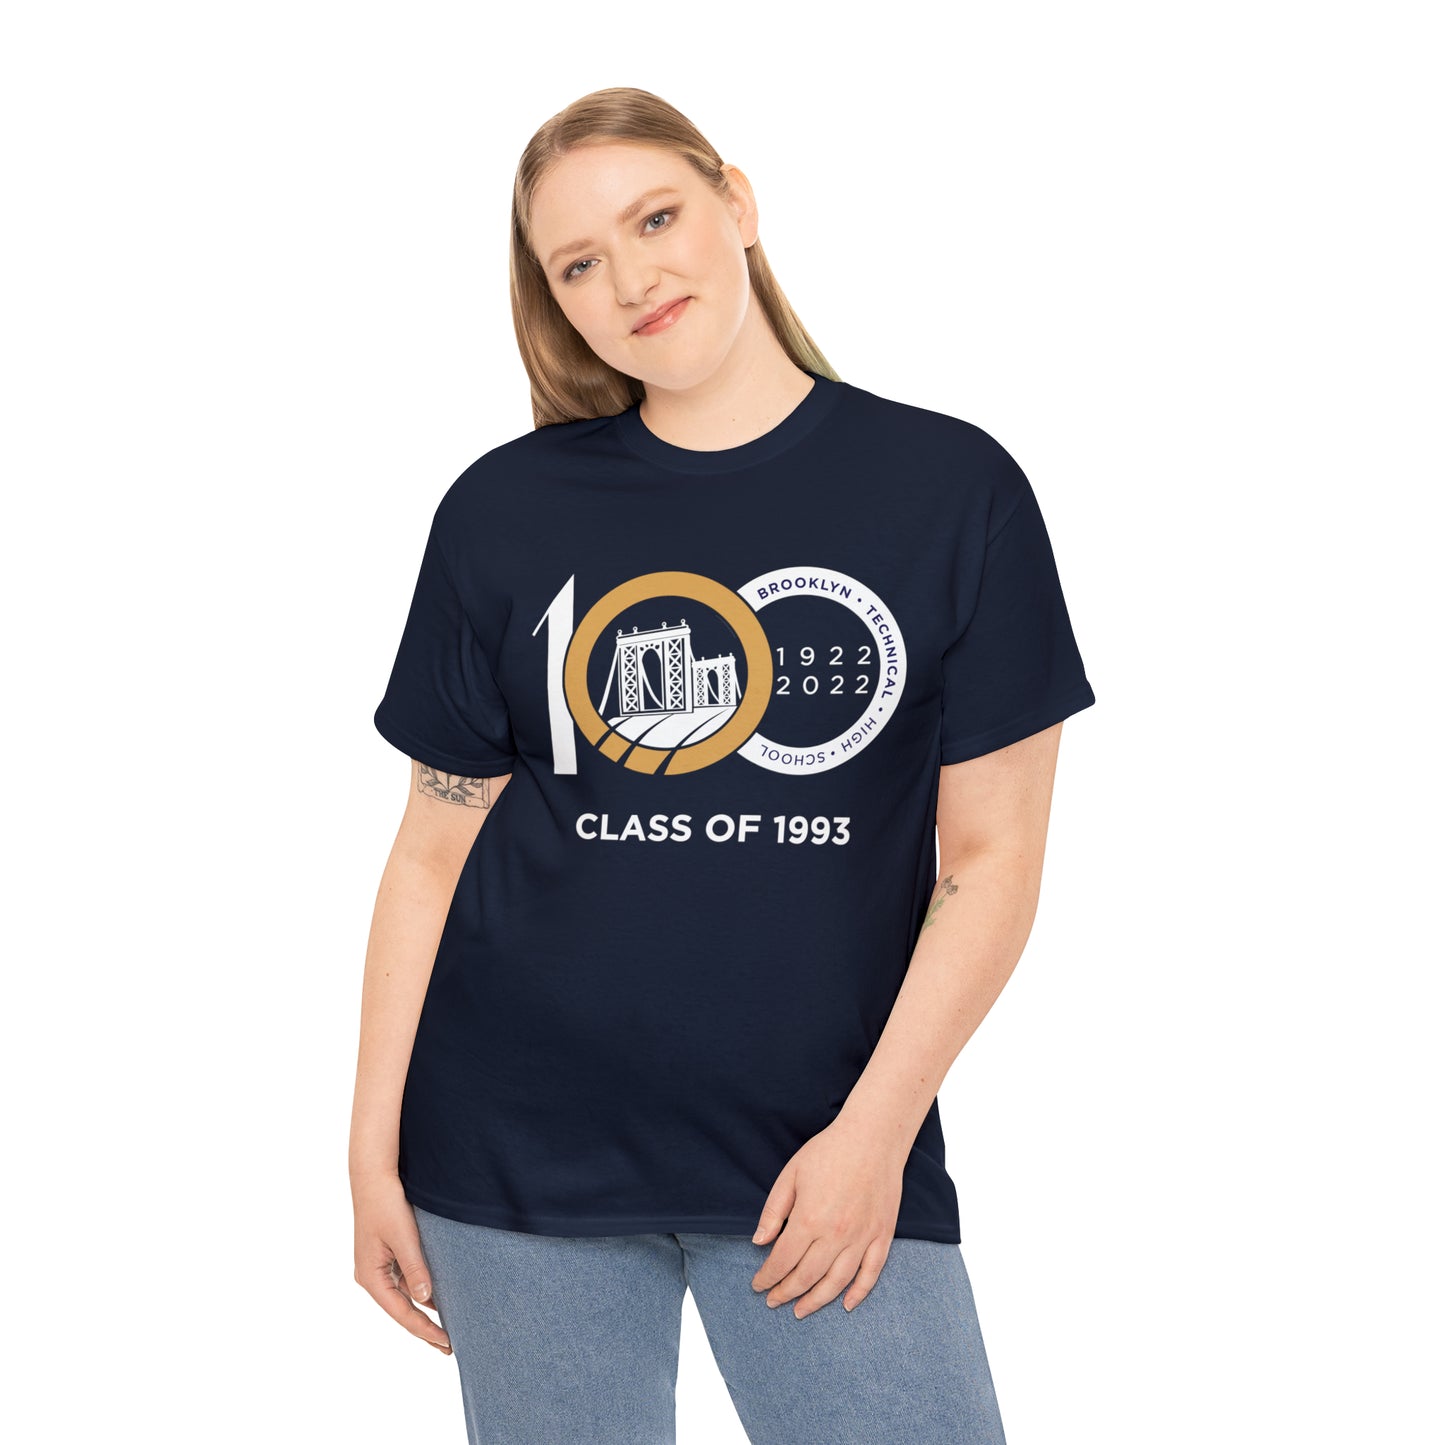 Centennial - Men's Heavy Cotton T-Shirt - Class Of 1993